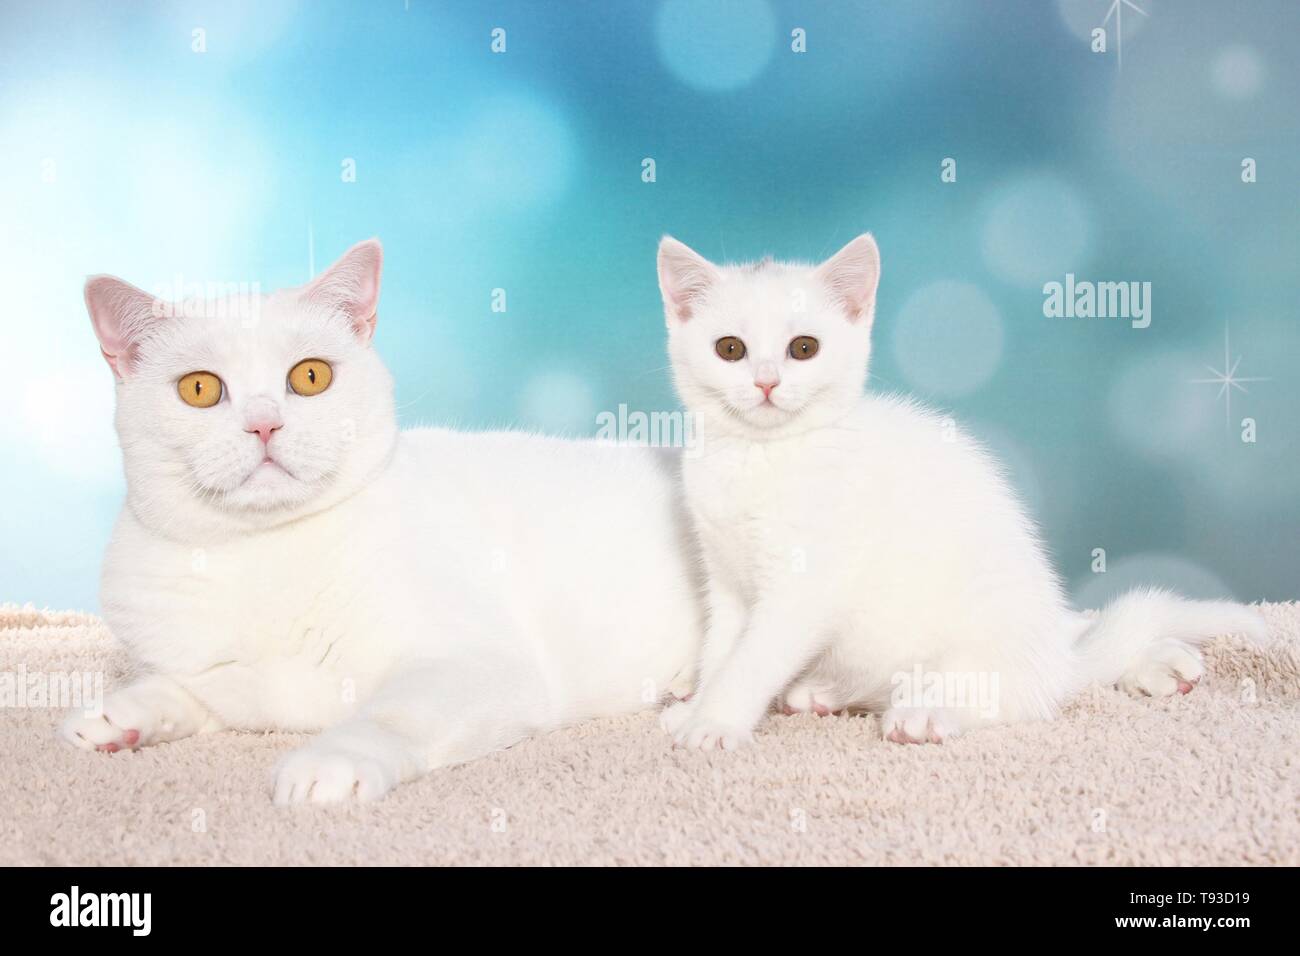 British Shorthair cat and kitten Stock Photo